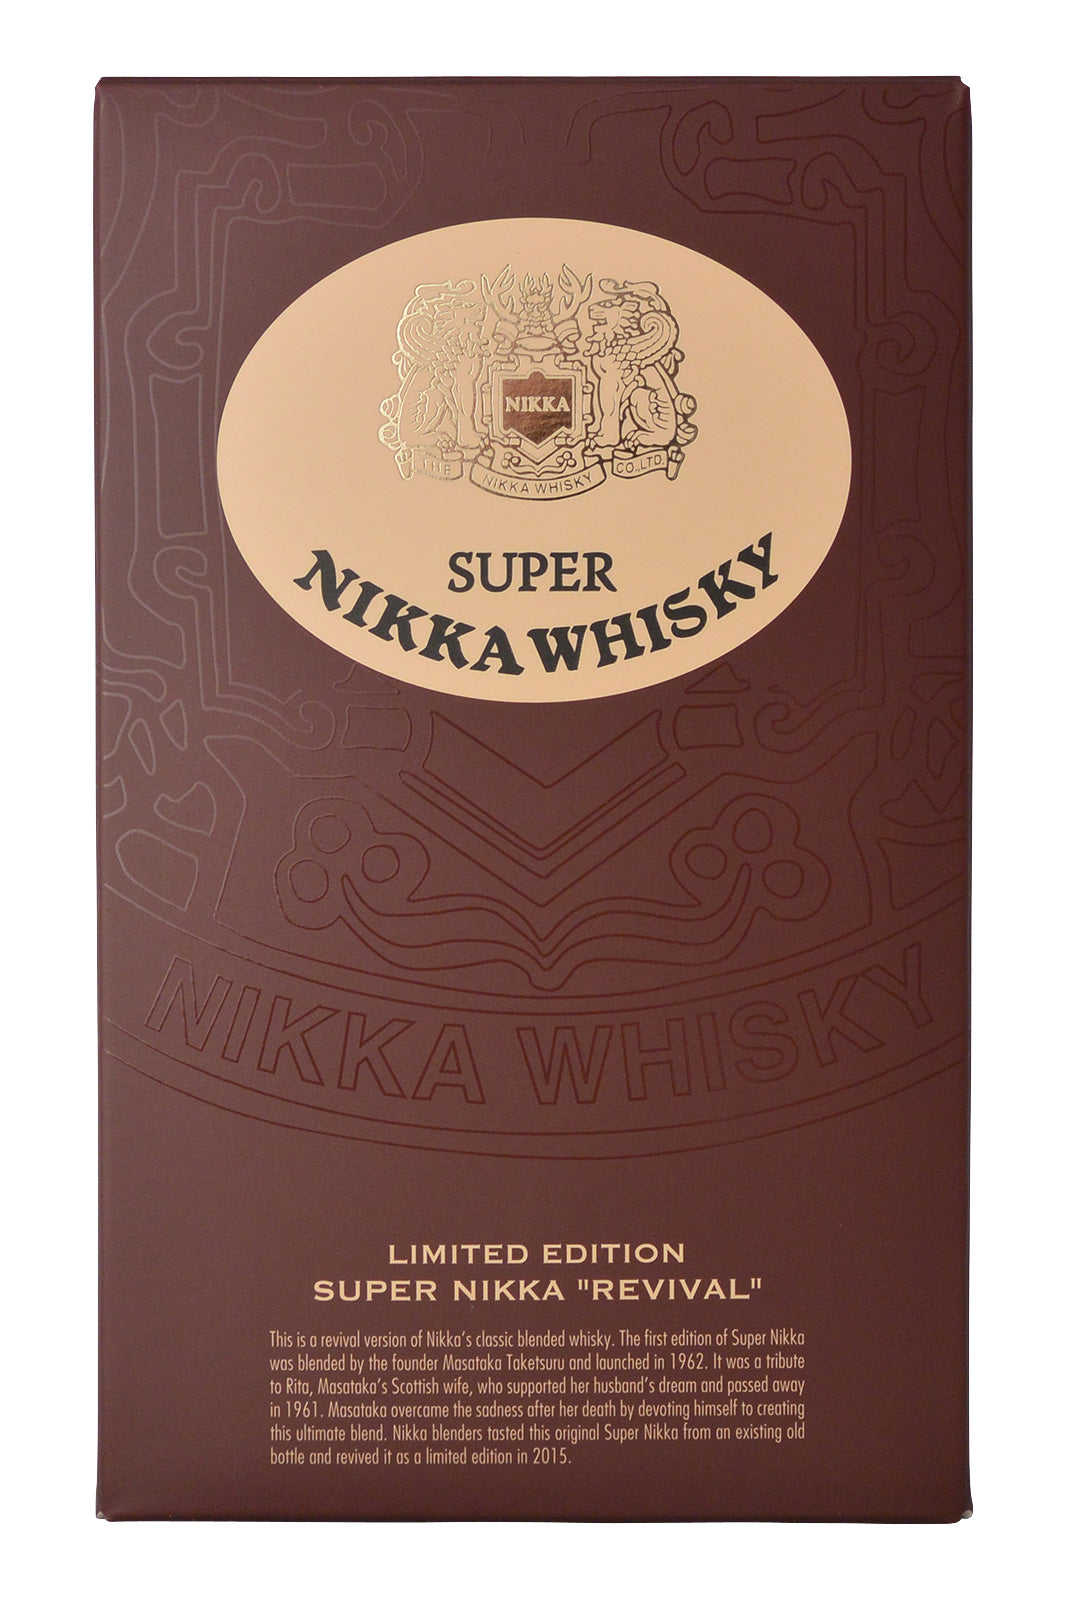 Super Nikka Whisky